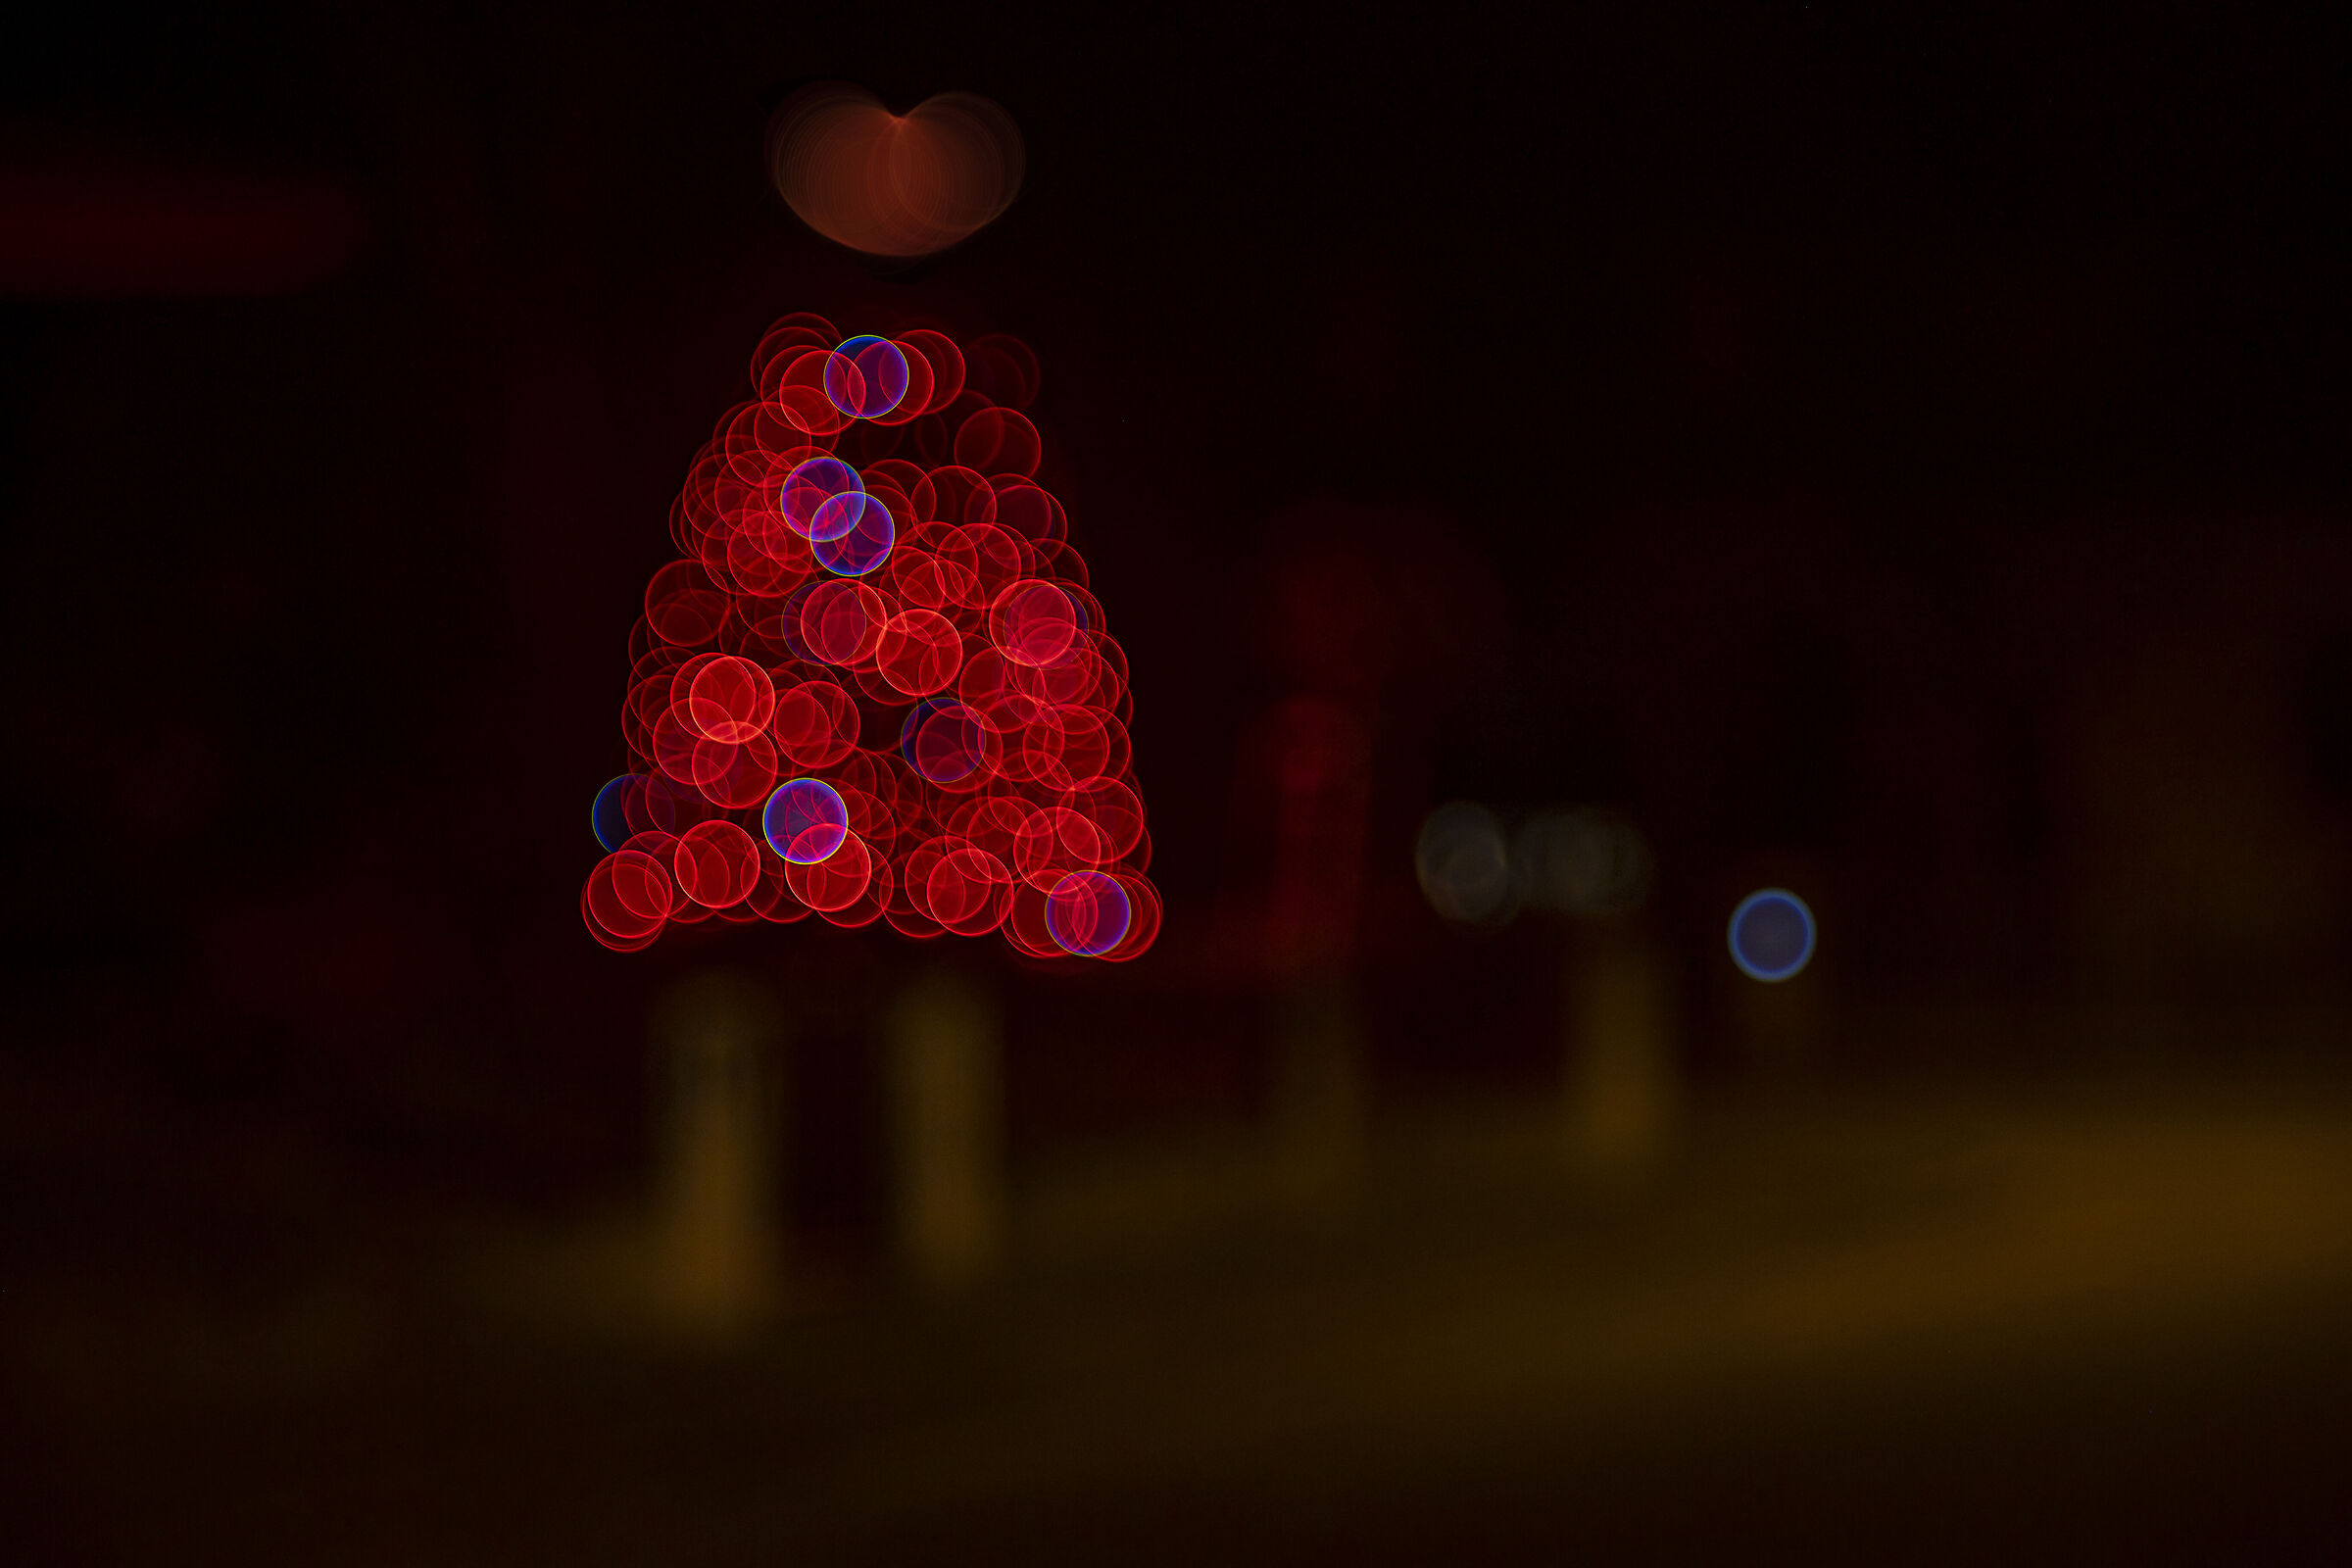 Christmas lights...